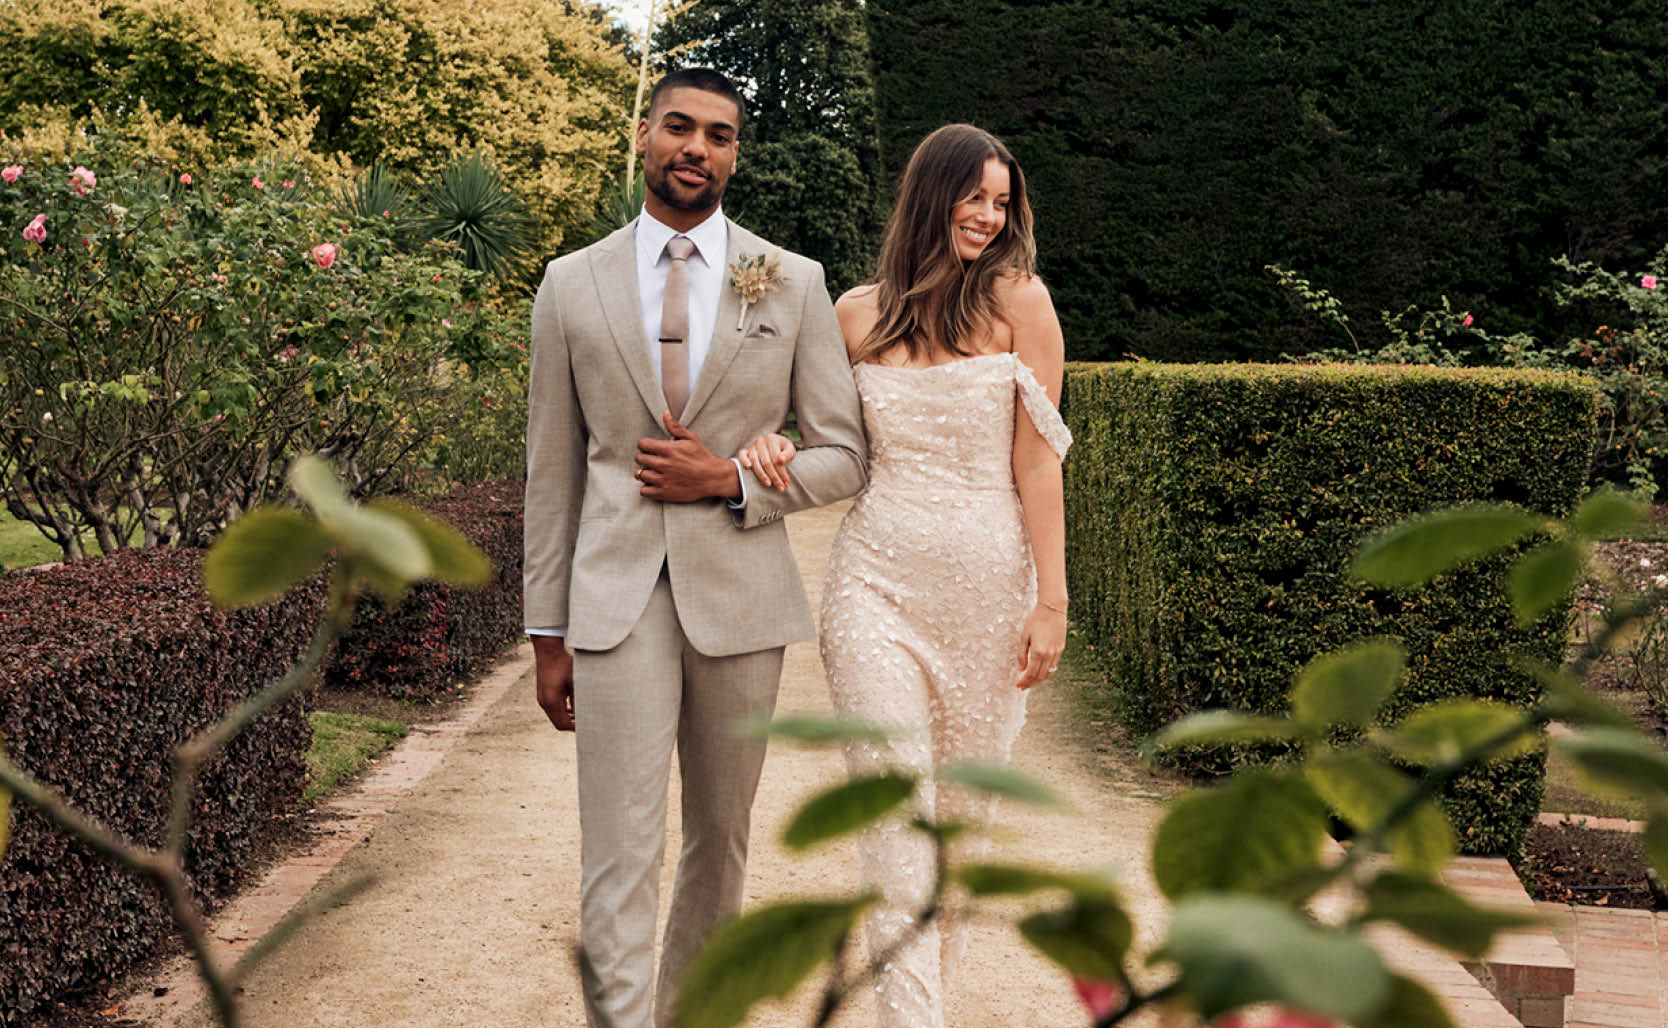 Male model wearing beige suit with female moderl wearing glittery weading dress walking through winery garden setting